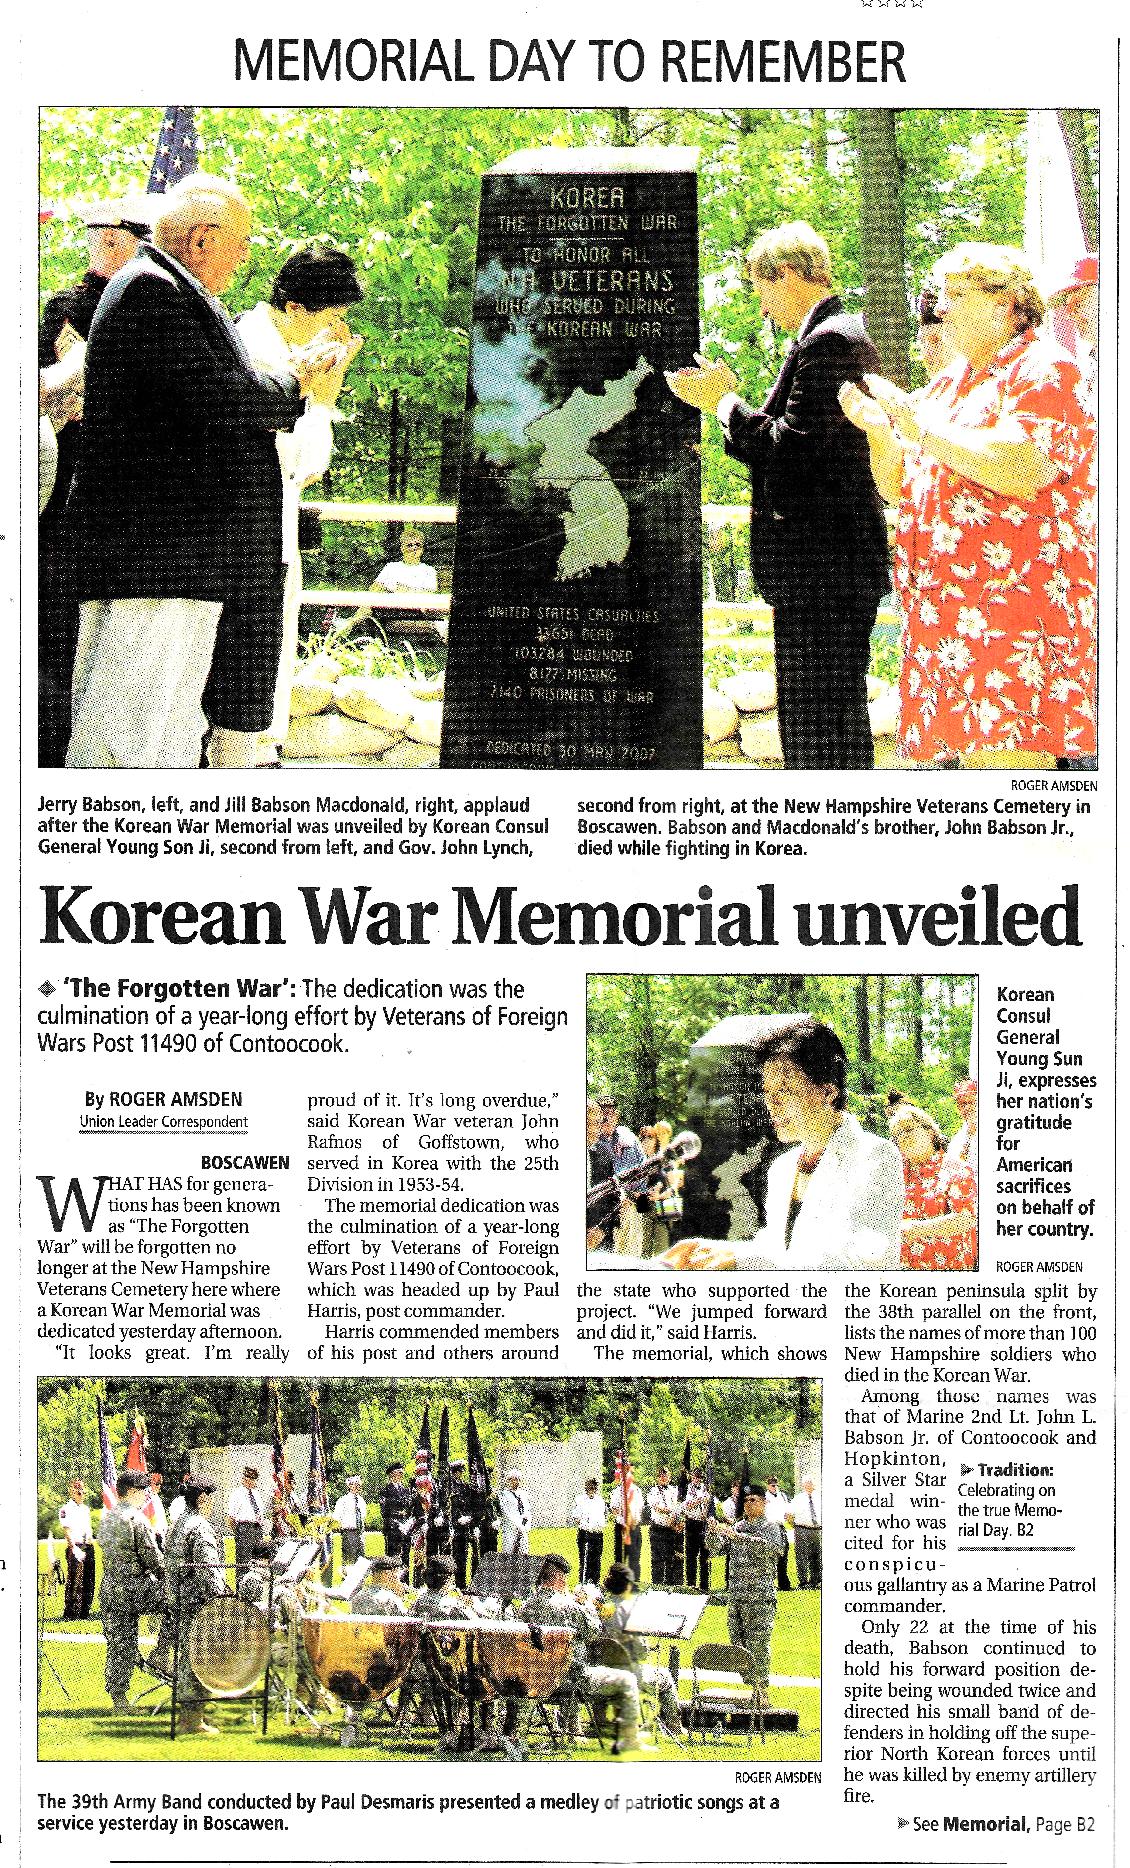 Korean War Memorial Dedication - NH State Veterans Cemetery